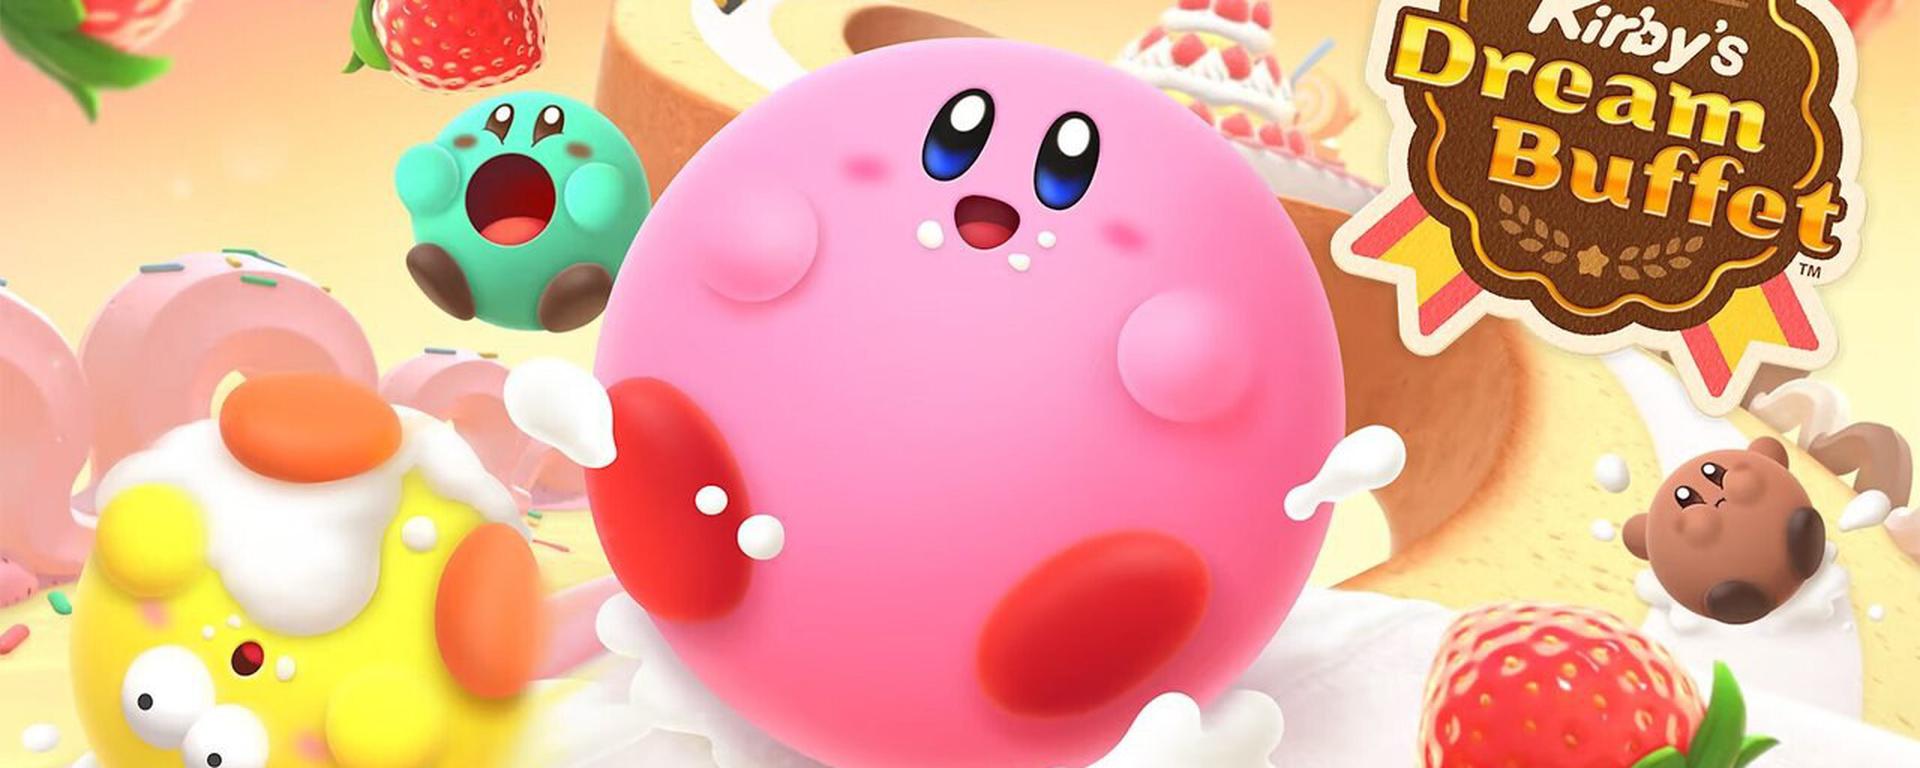 Kirby’s Dream Buffet - Review: lo bueno y no tan bueno del juego a lo Fall Guys de Nintendo